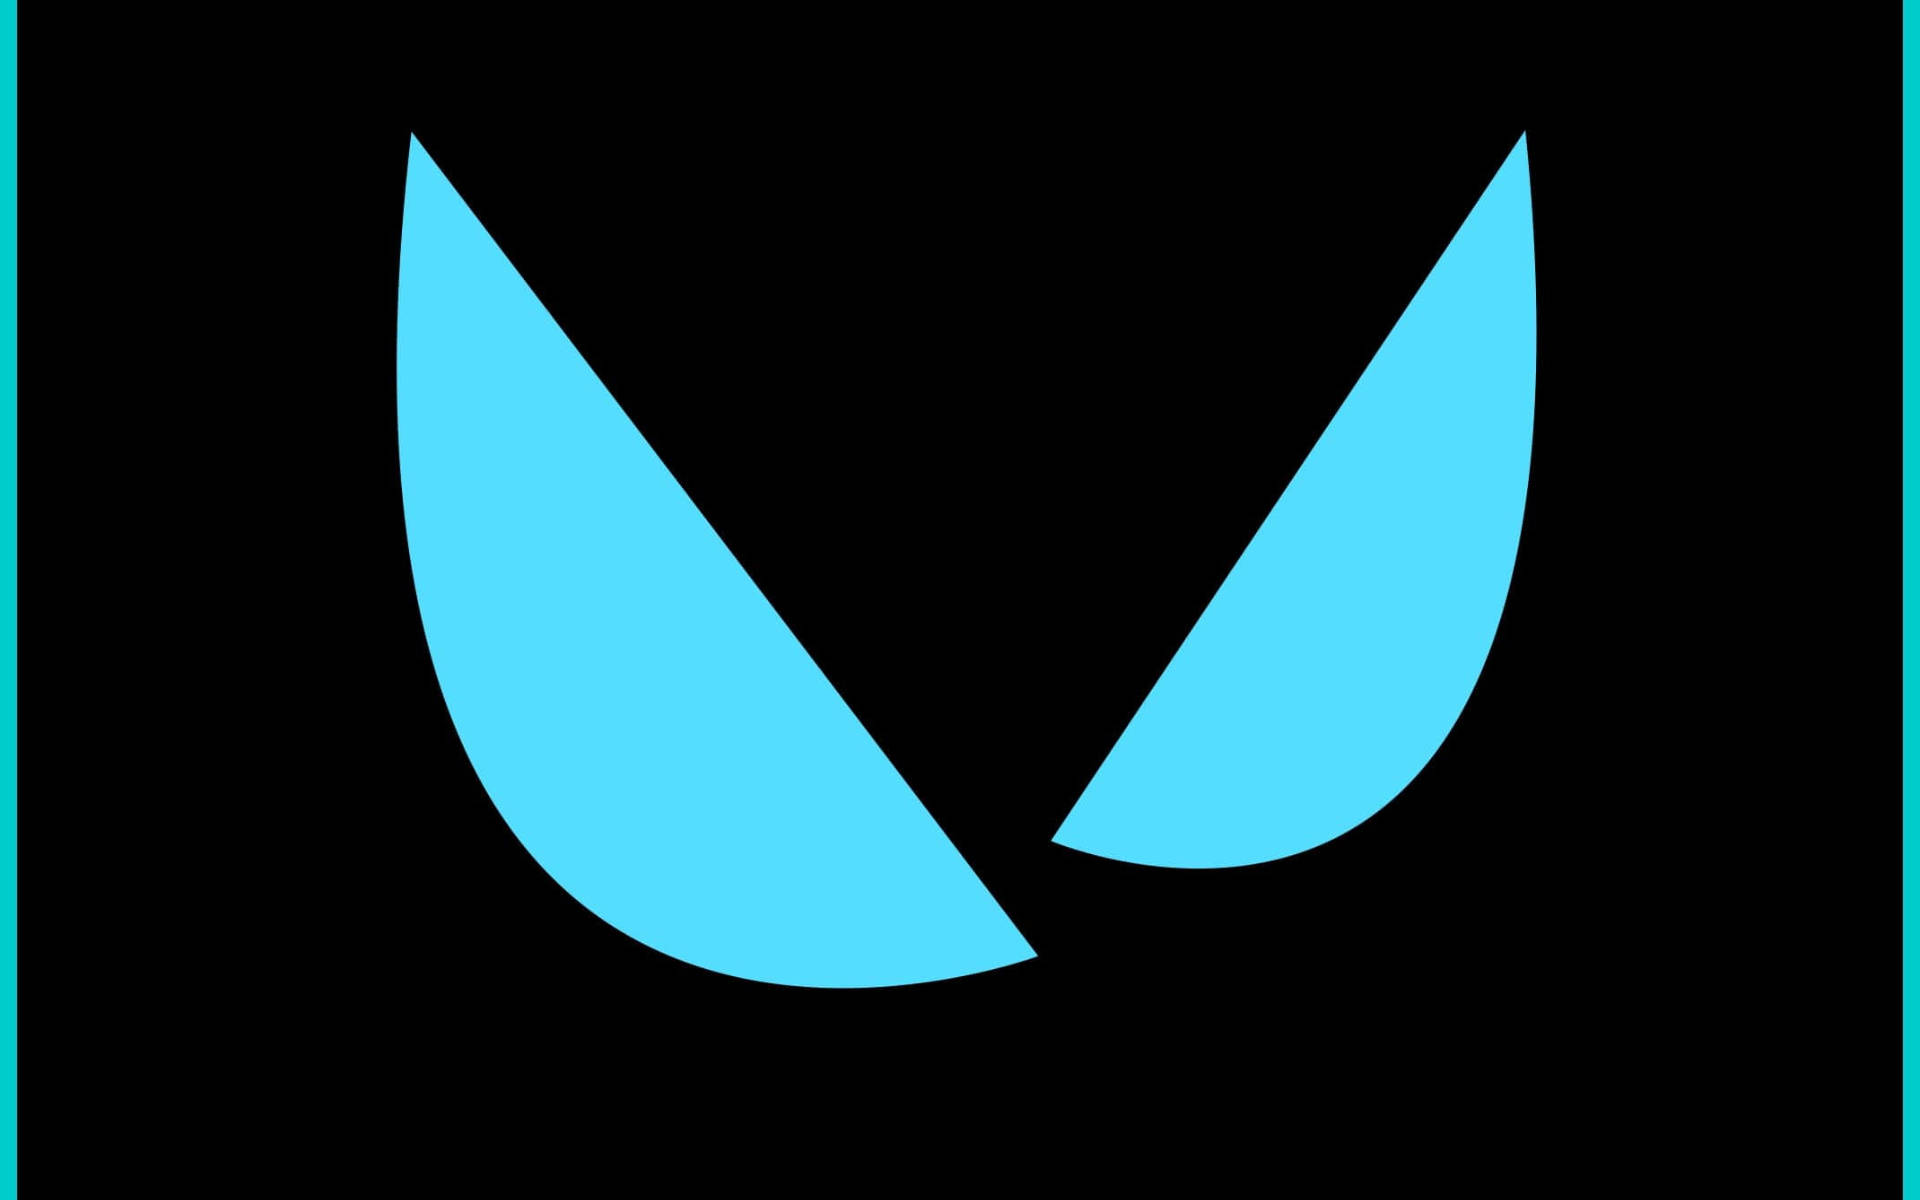 Logotipovalorant Em Vetor De Arte Azul. Papel de Parede